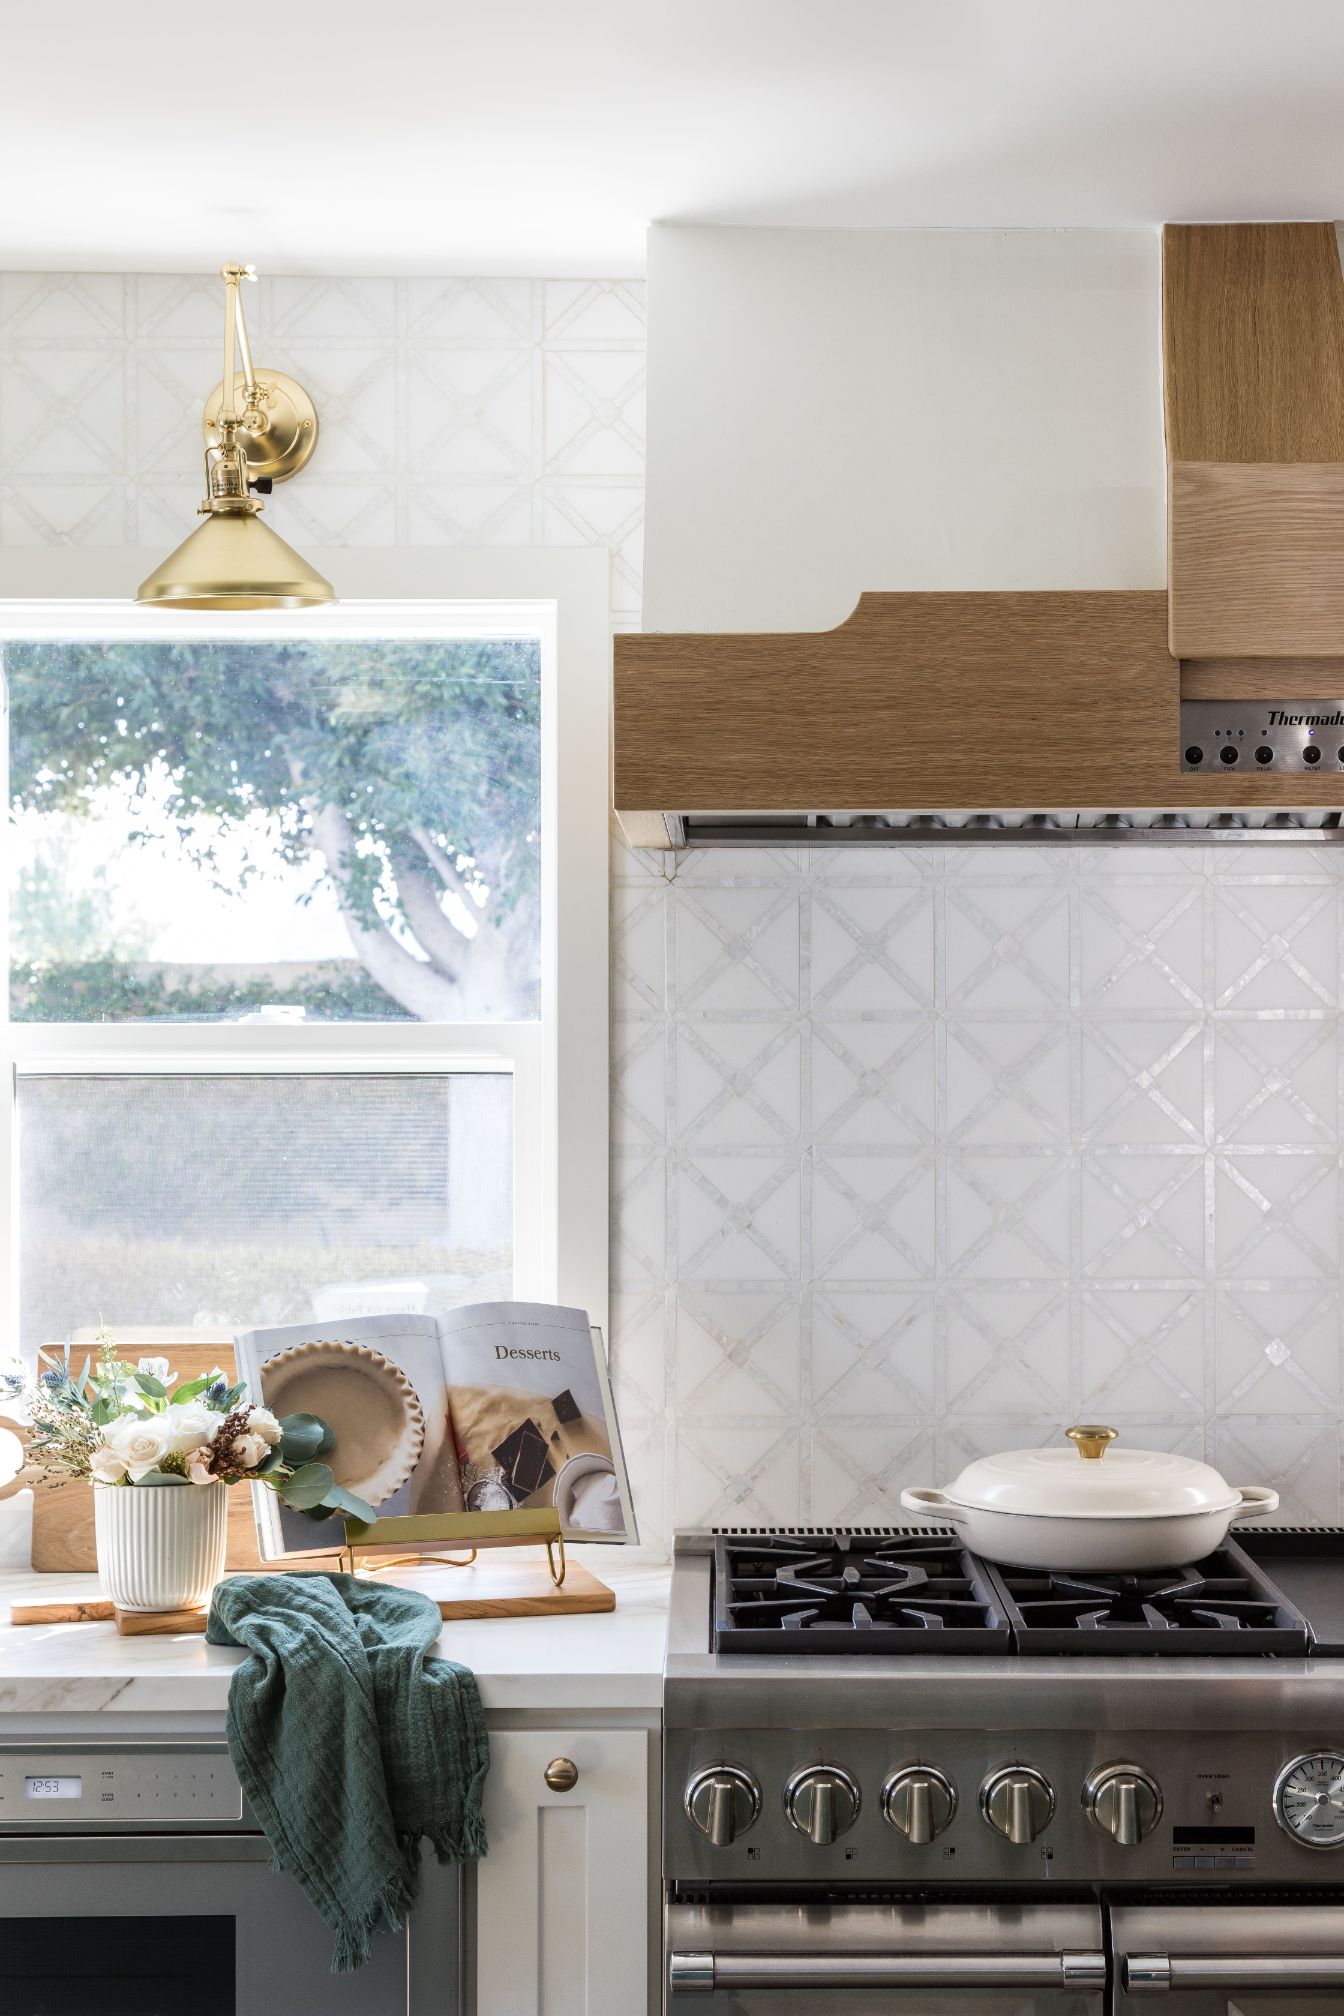 gorgeous backsplash tile in front of gas range in kitchen remodel